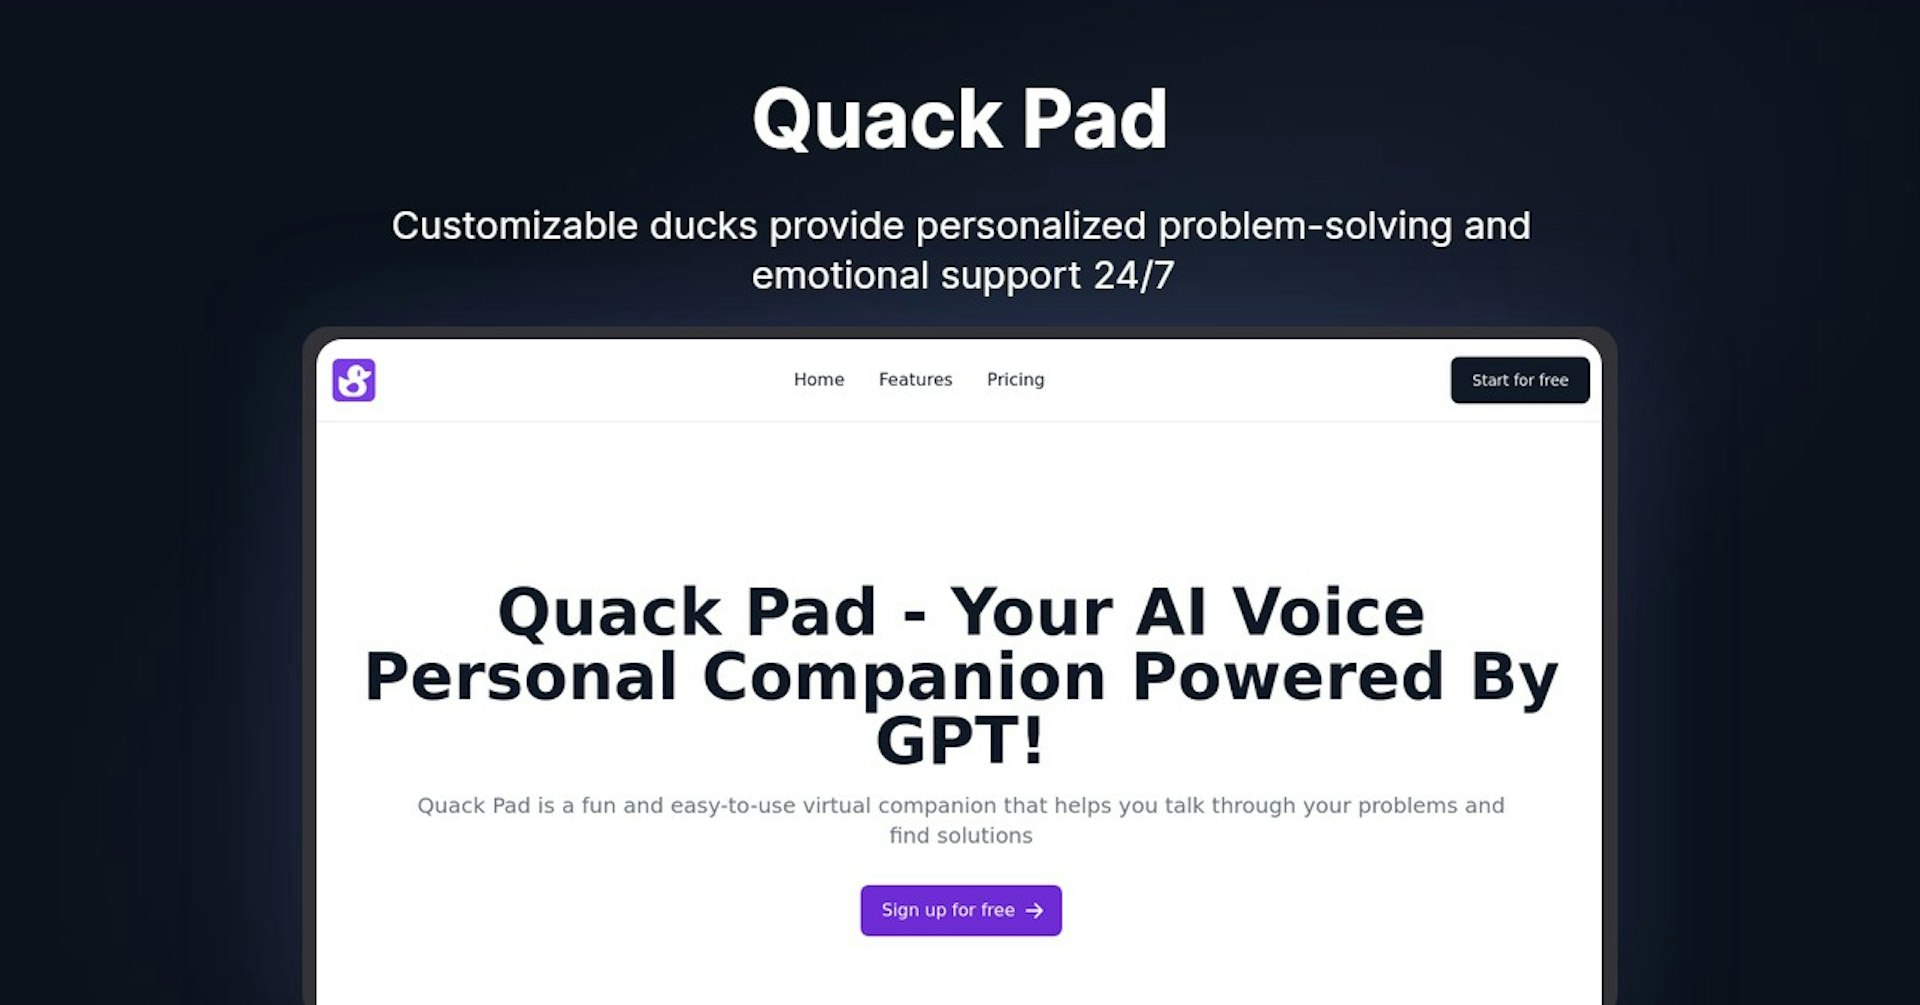 Quack Pad